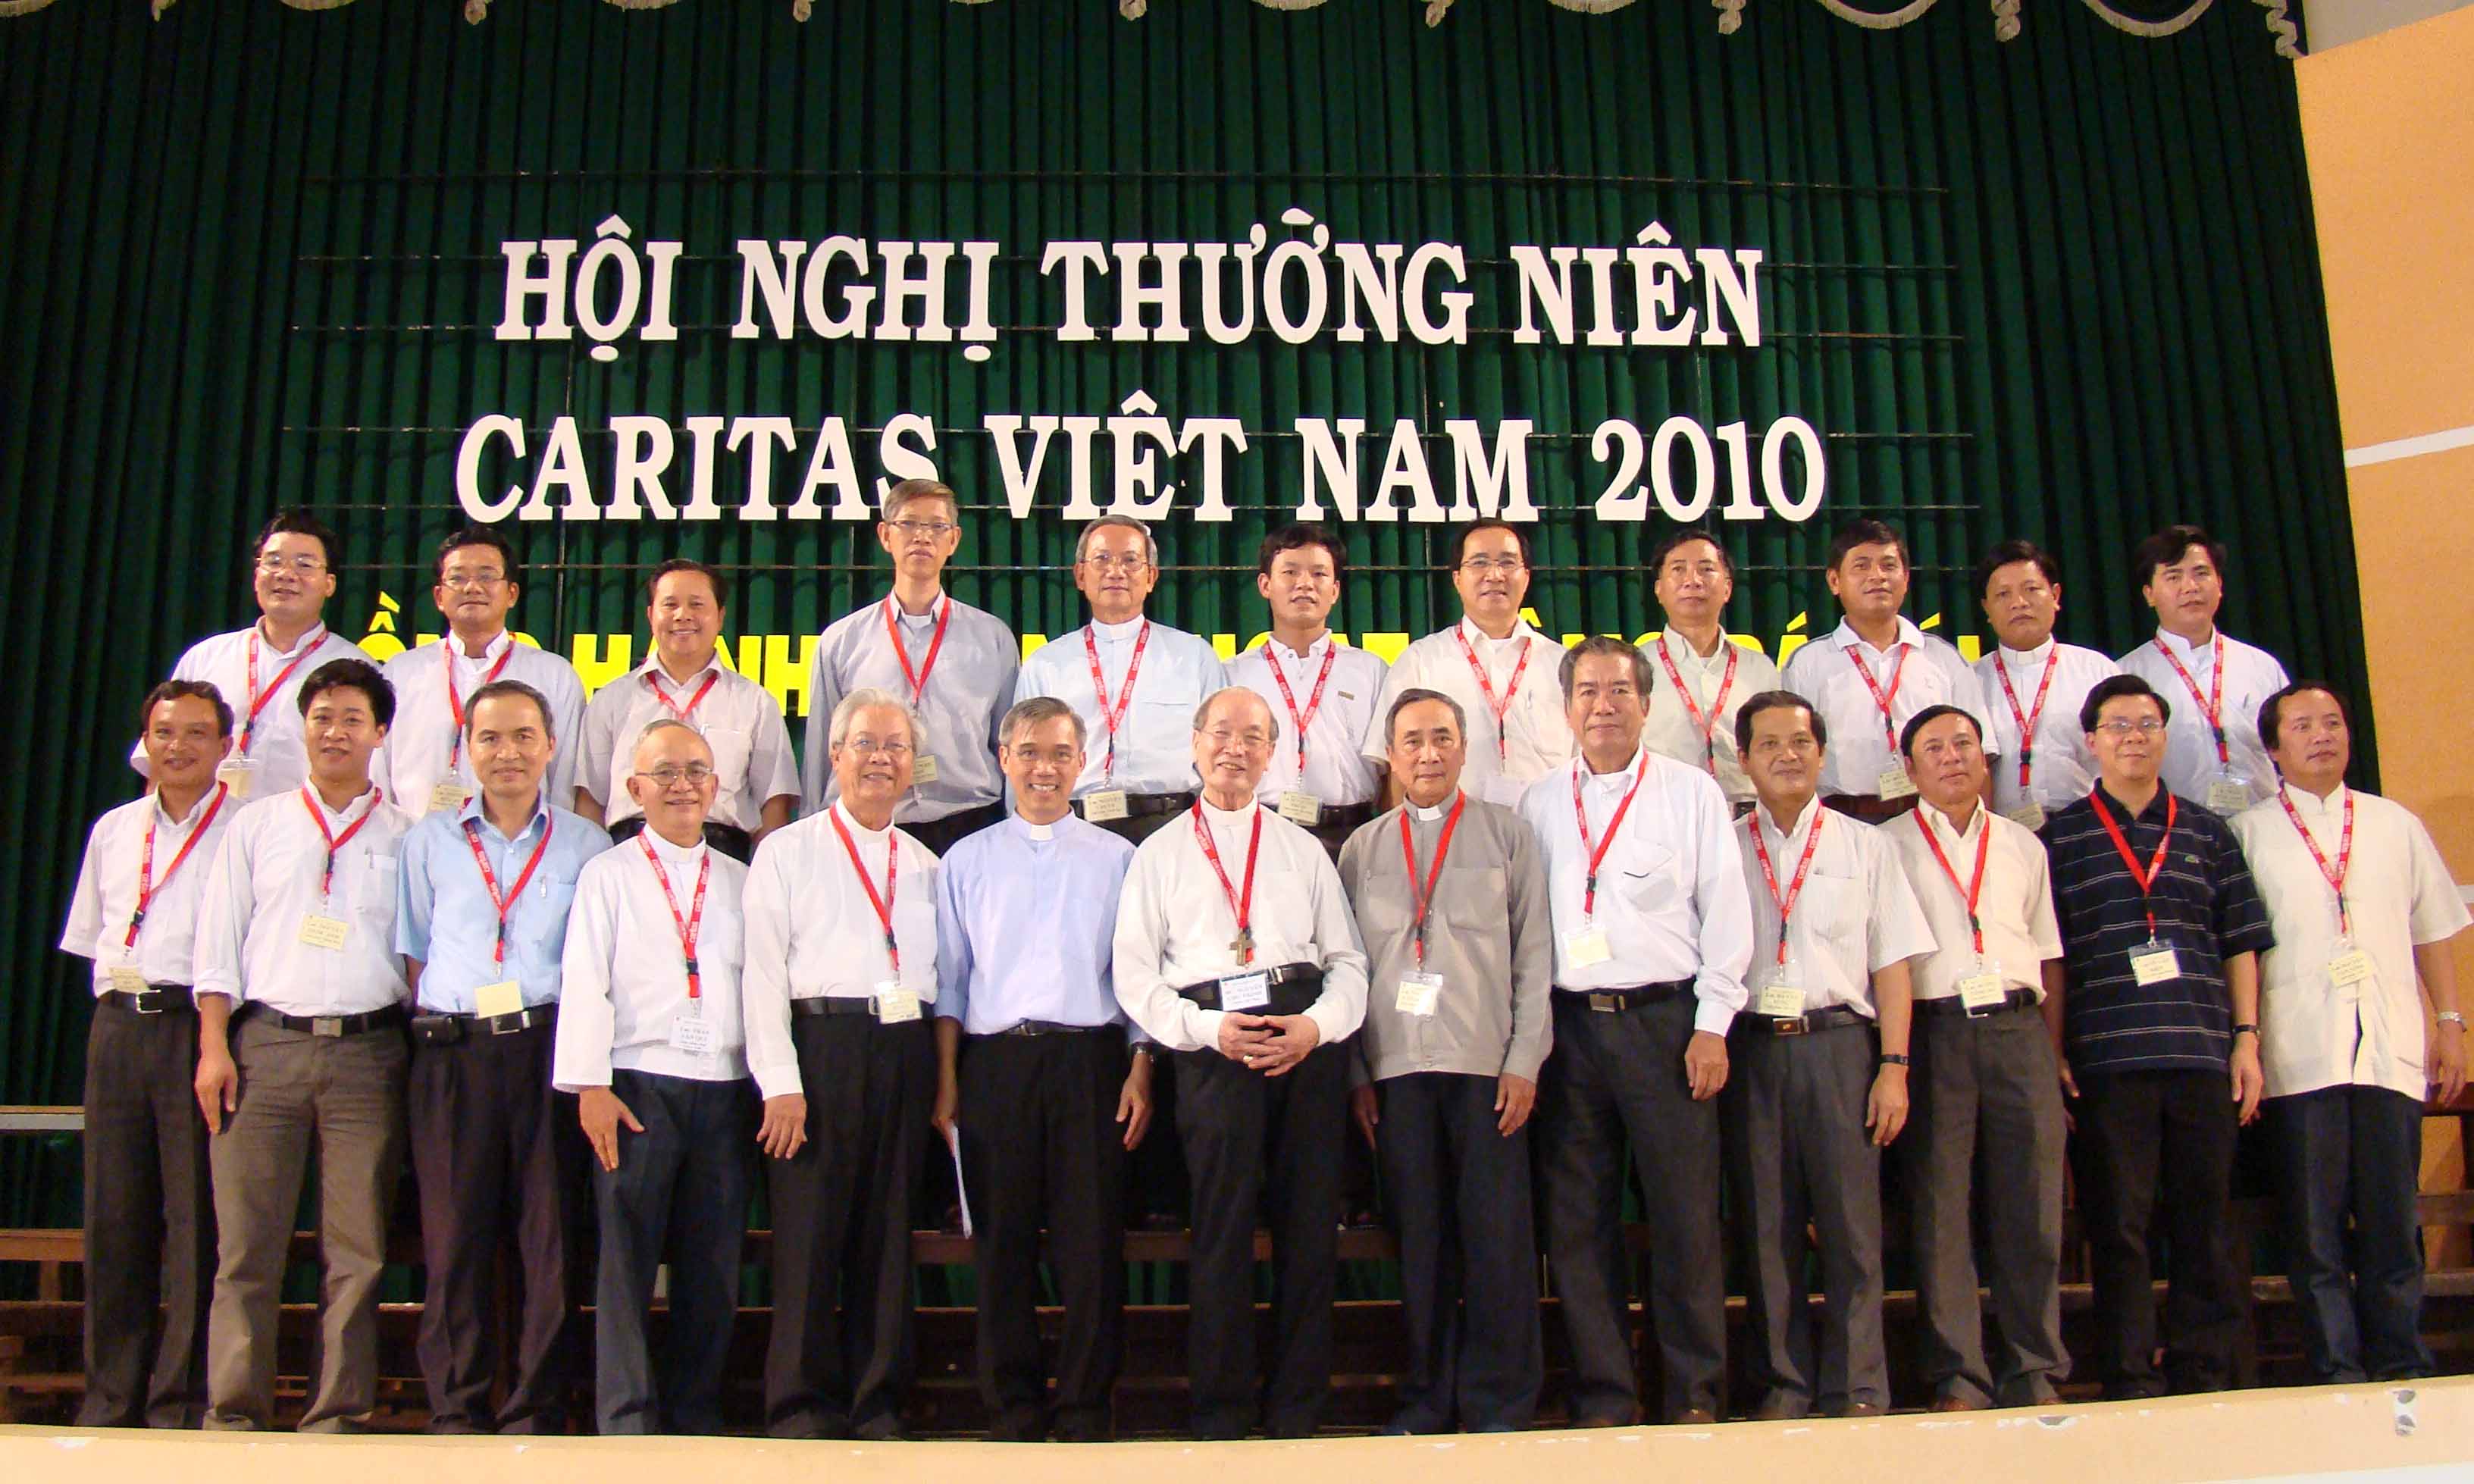 Caritas Việt Nam: HNTN 2010